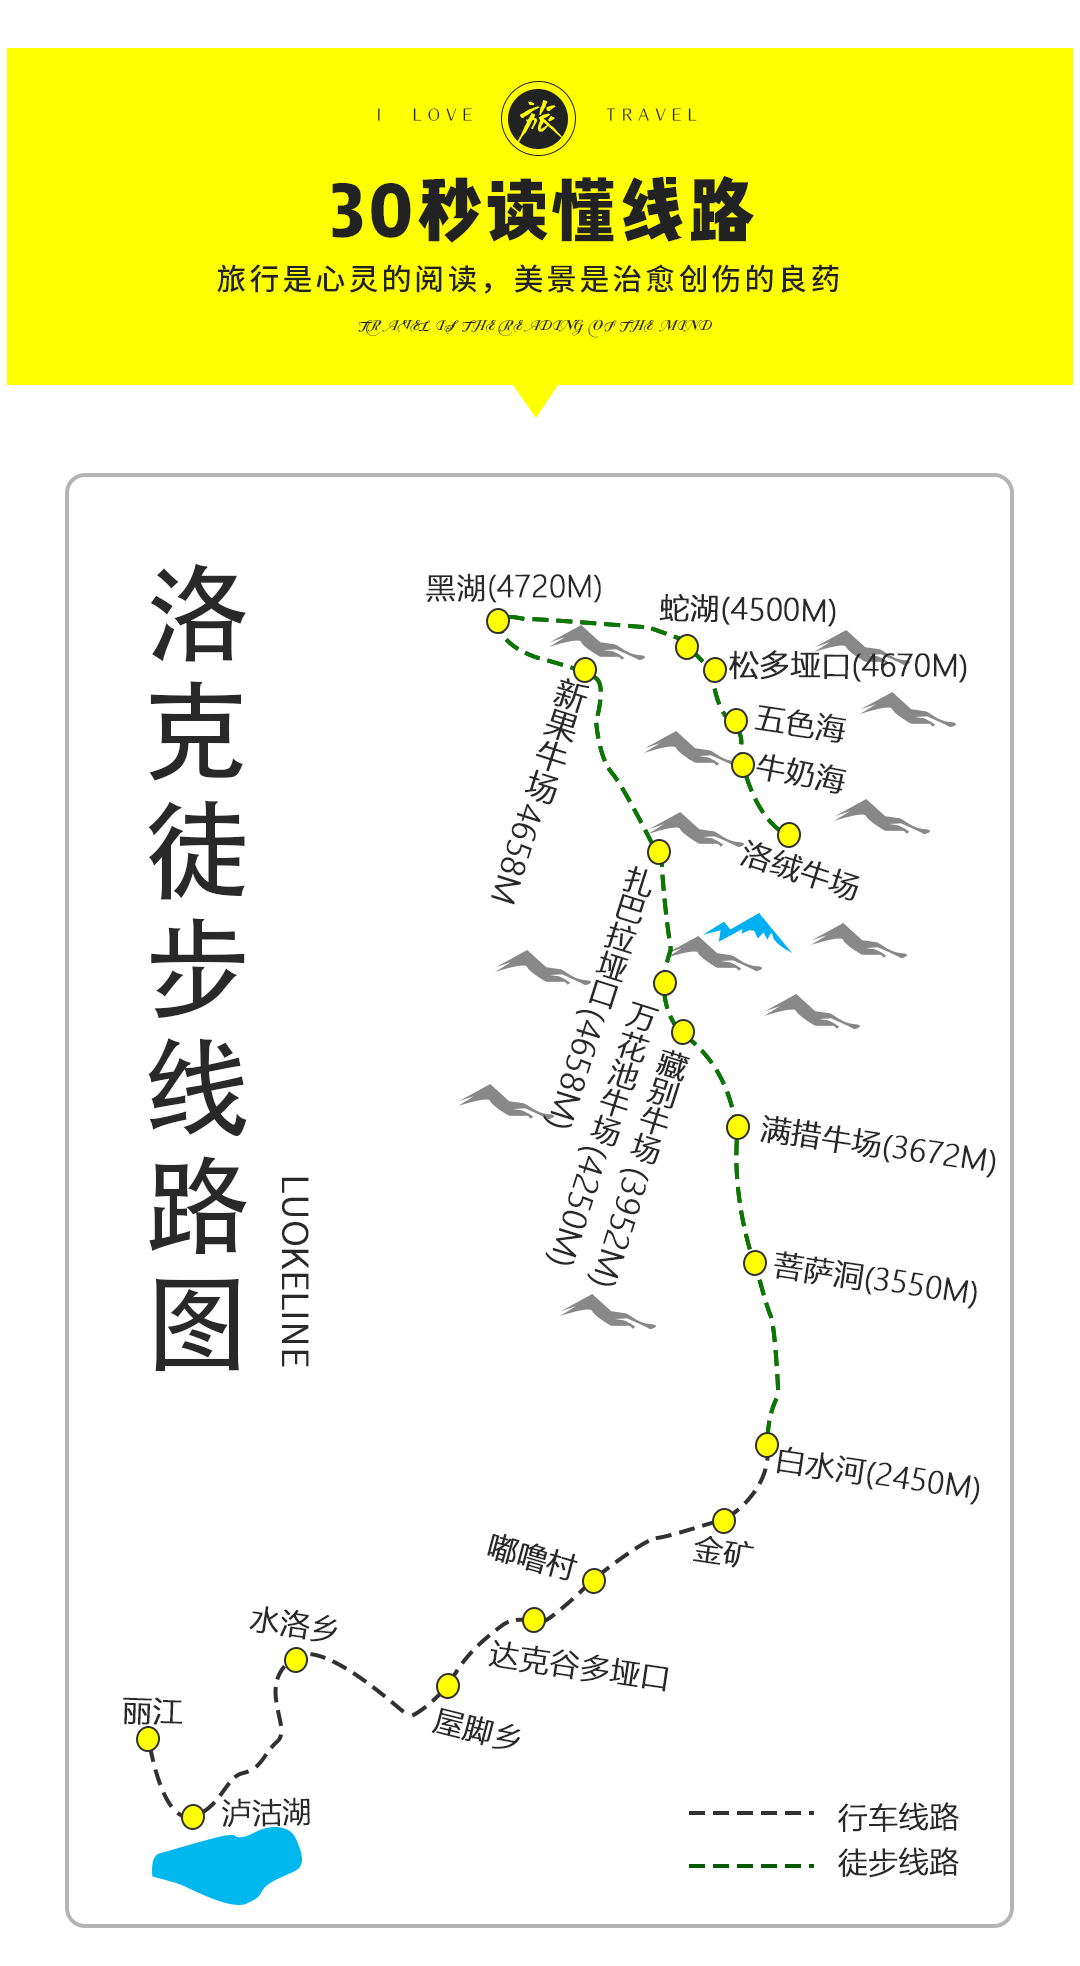 洛克线徒步从泸沽湖穿越至稻城亚丁7日游重走探险家洛克之路(提前下单